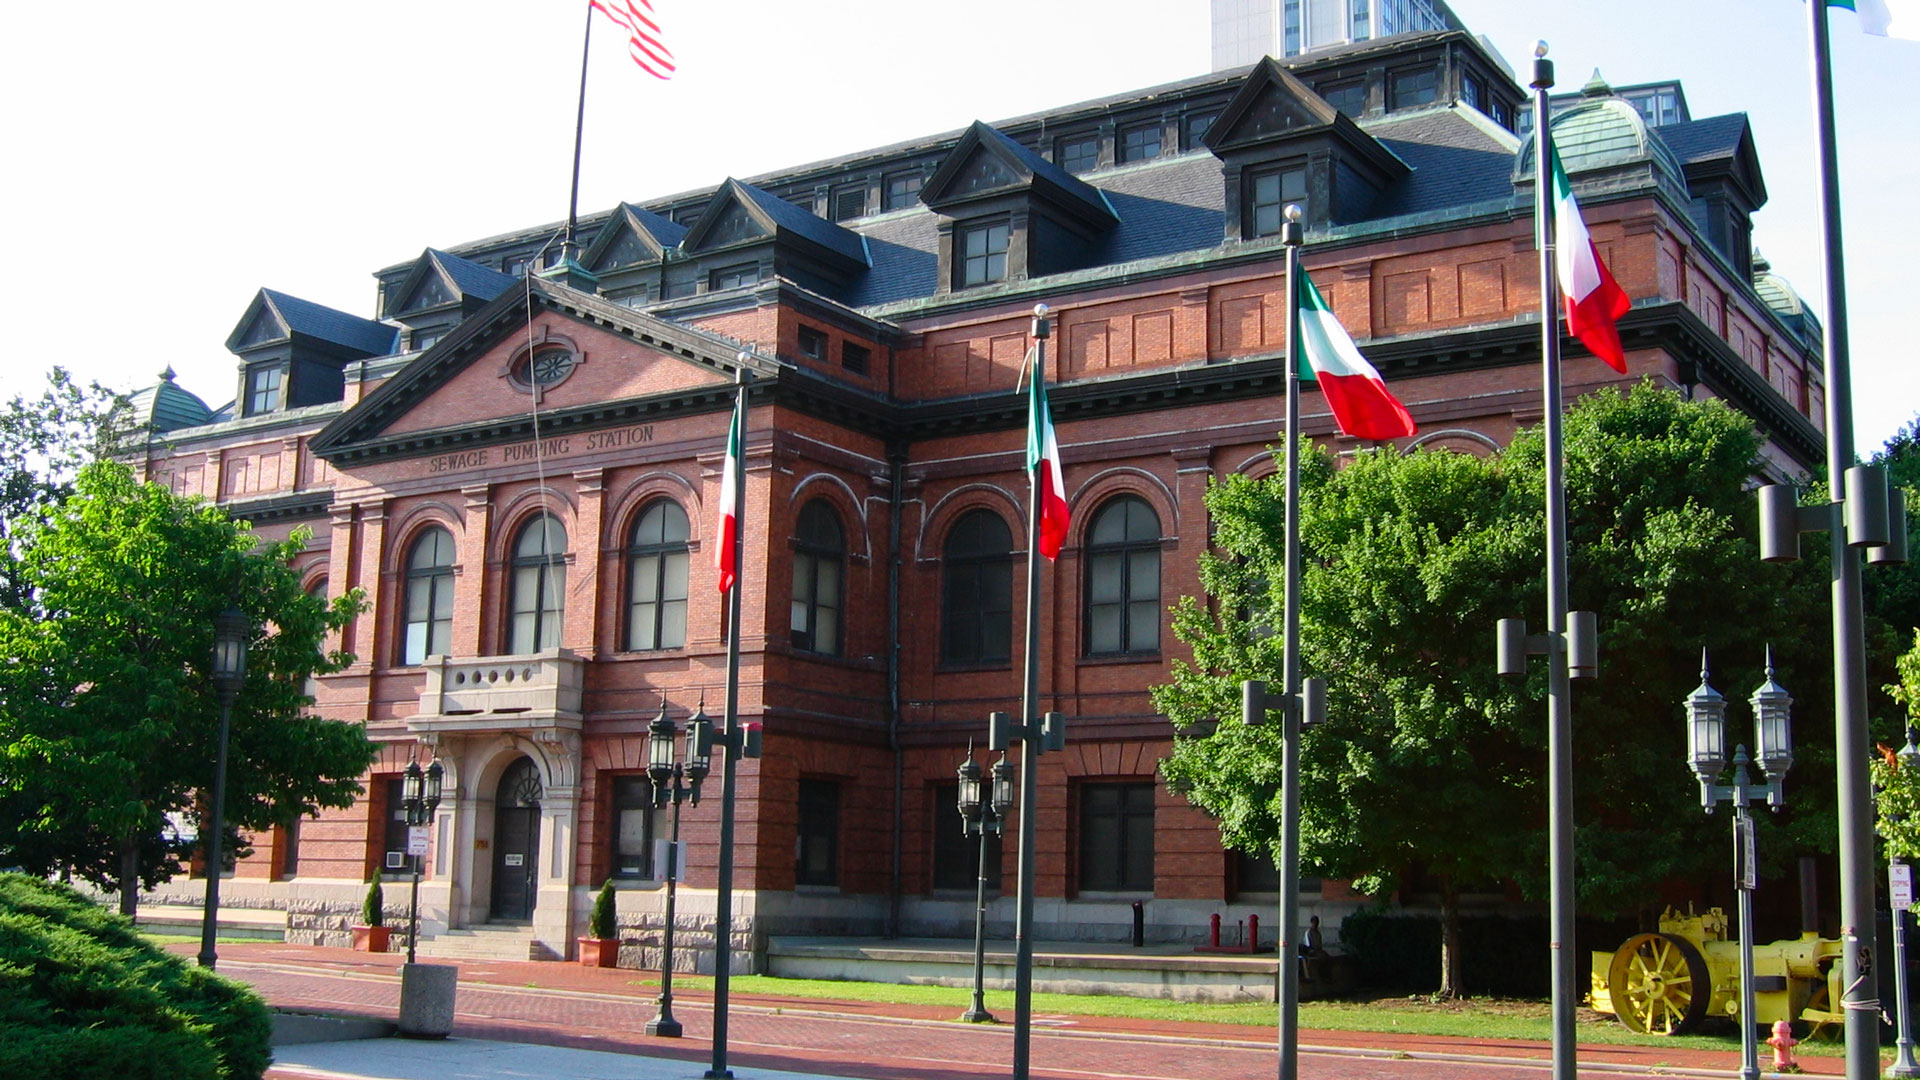 Baltimore Public Works Museum